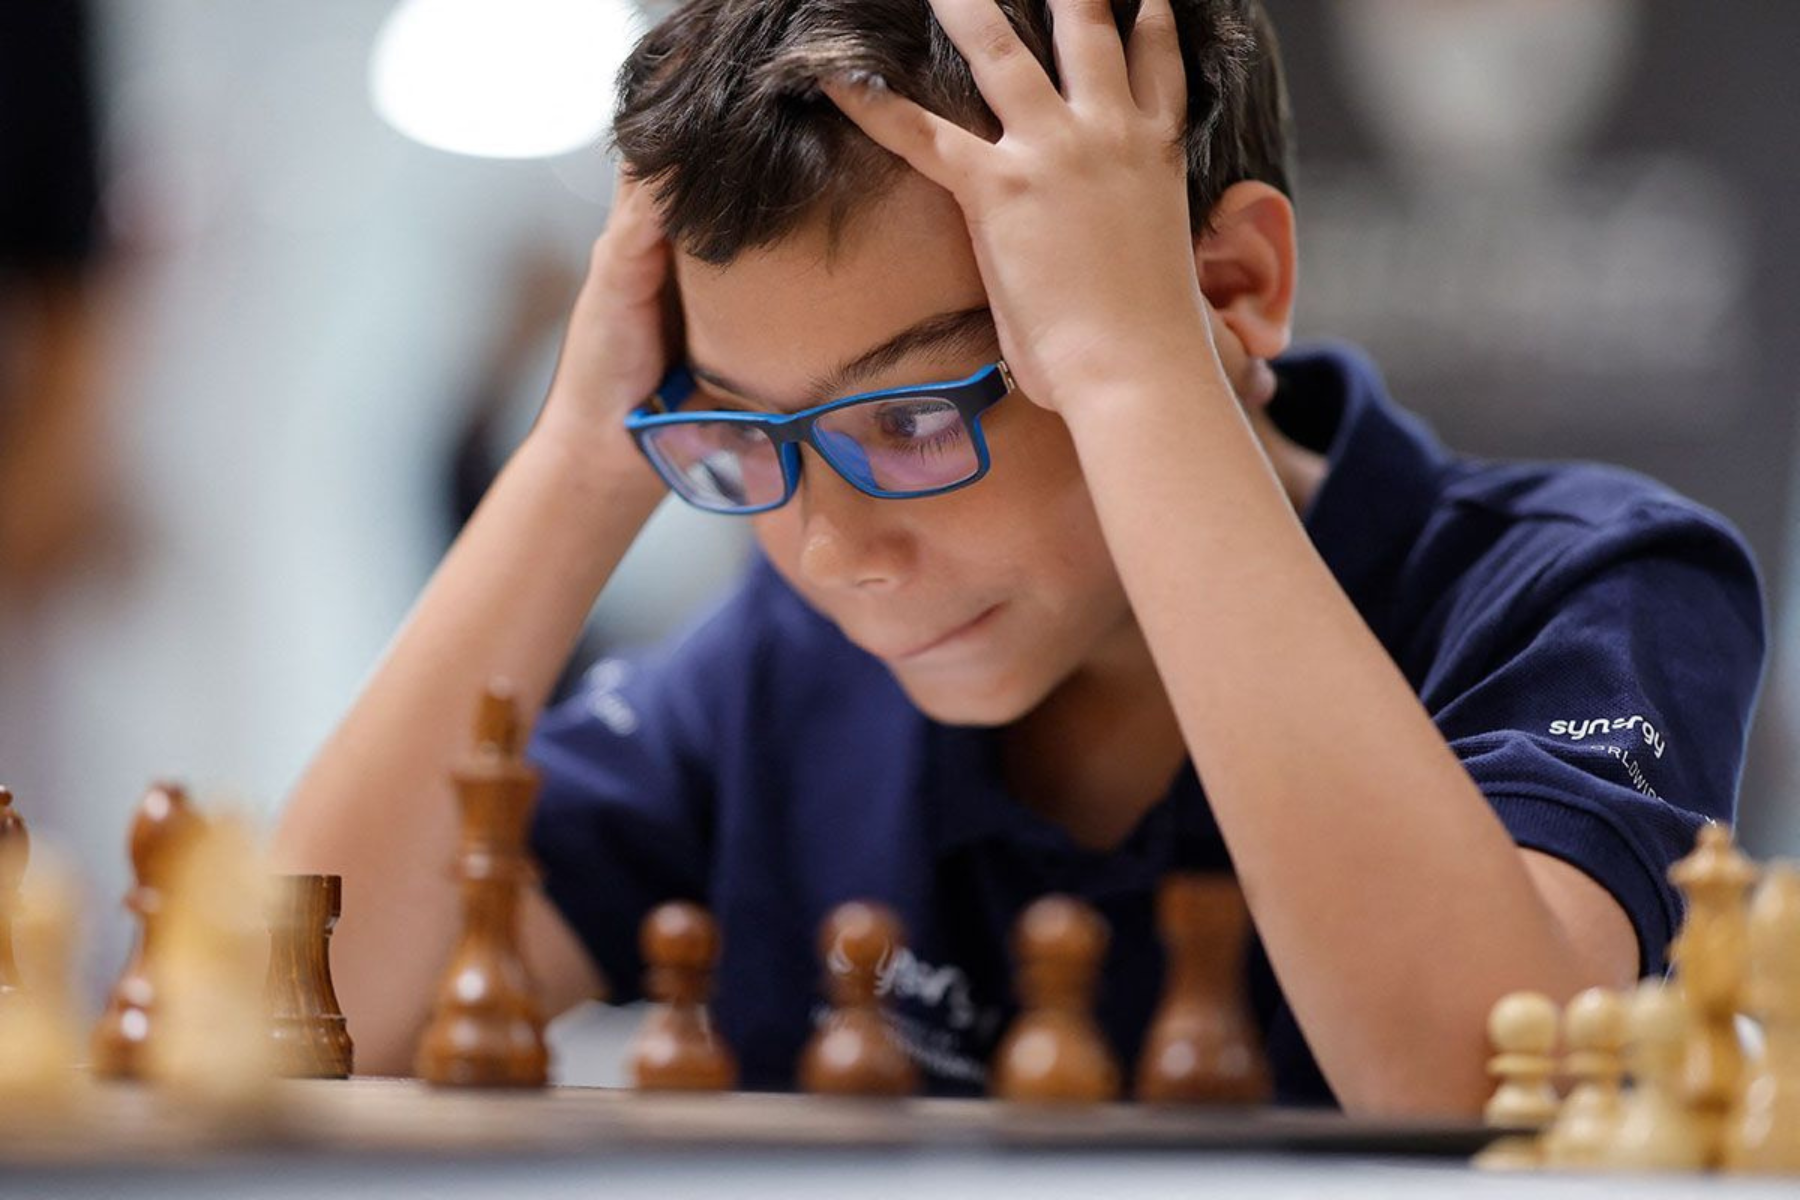 Faustino Oro, el prodigio argentino de 10 años, se convirtió en el maestro internacional de ajedrez más joven de la historia, superando récords y dejando su huella en el mundo del ajedrez.